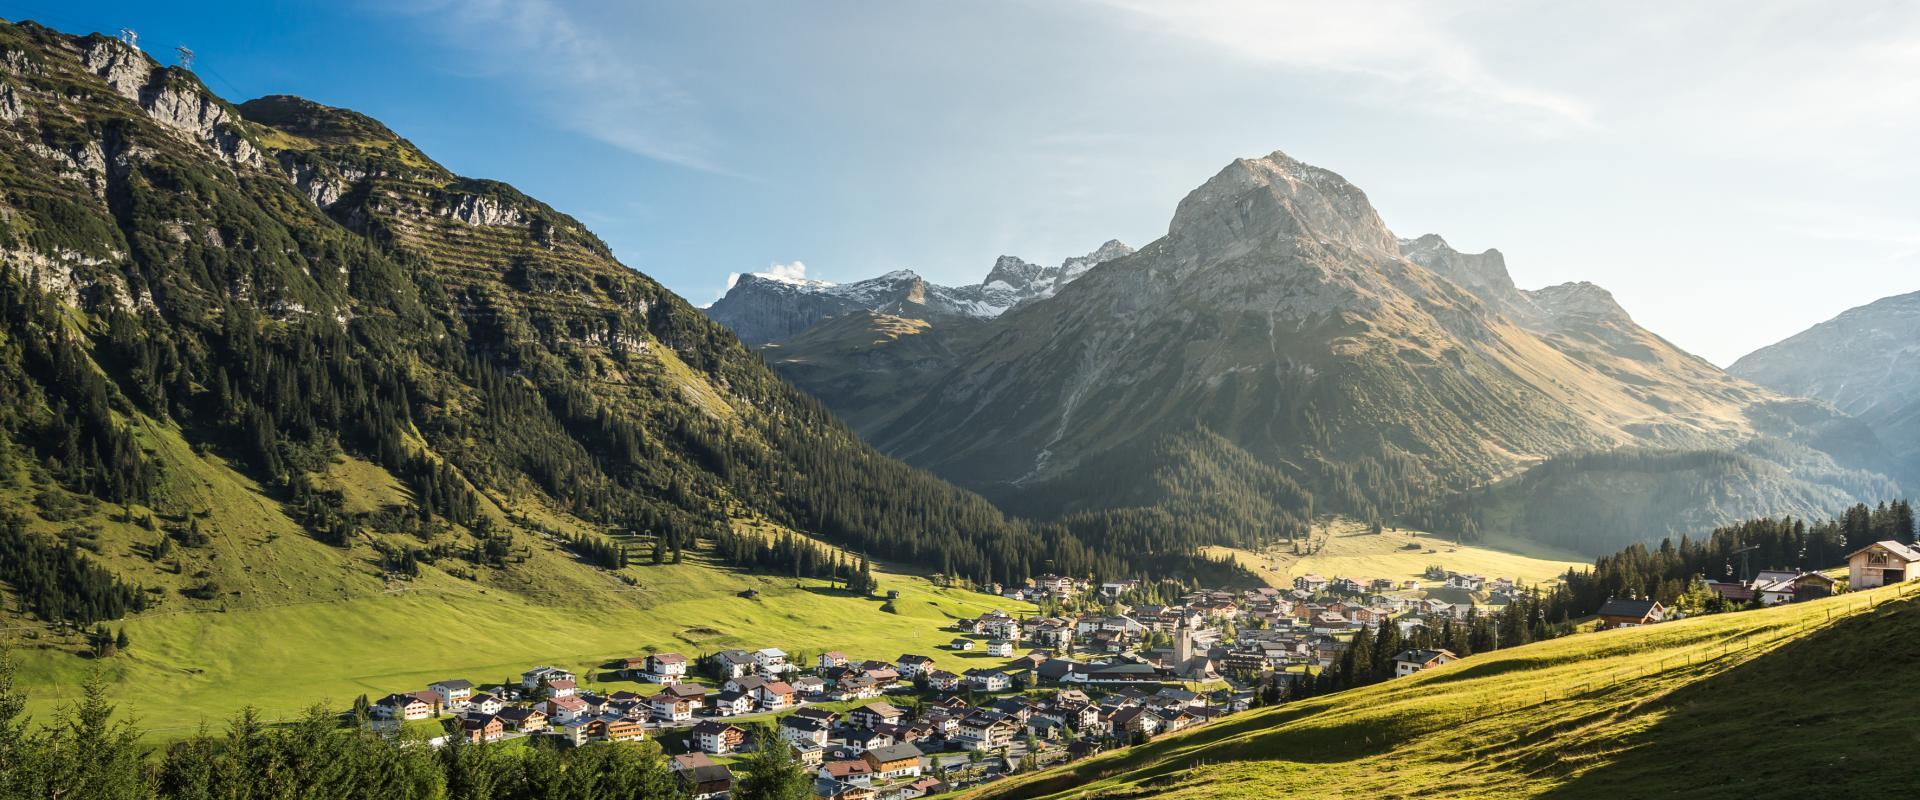 Aussicht Gipslöcher in Lech am Arlberg